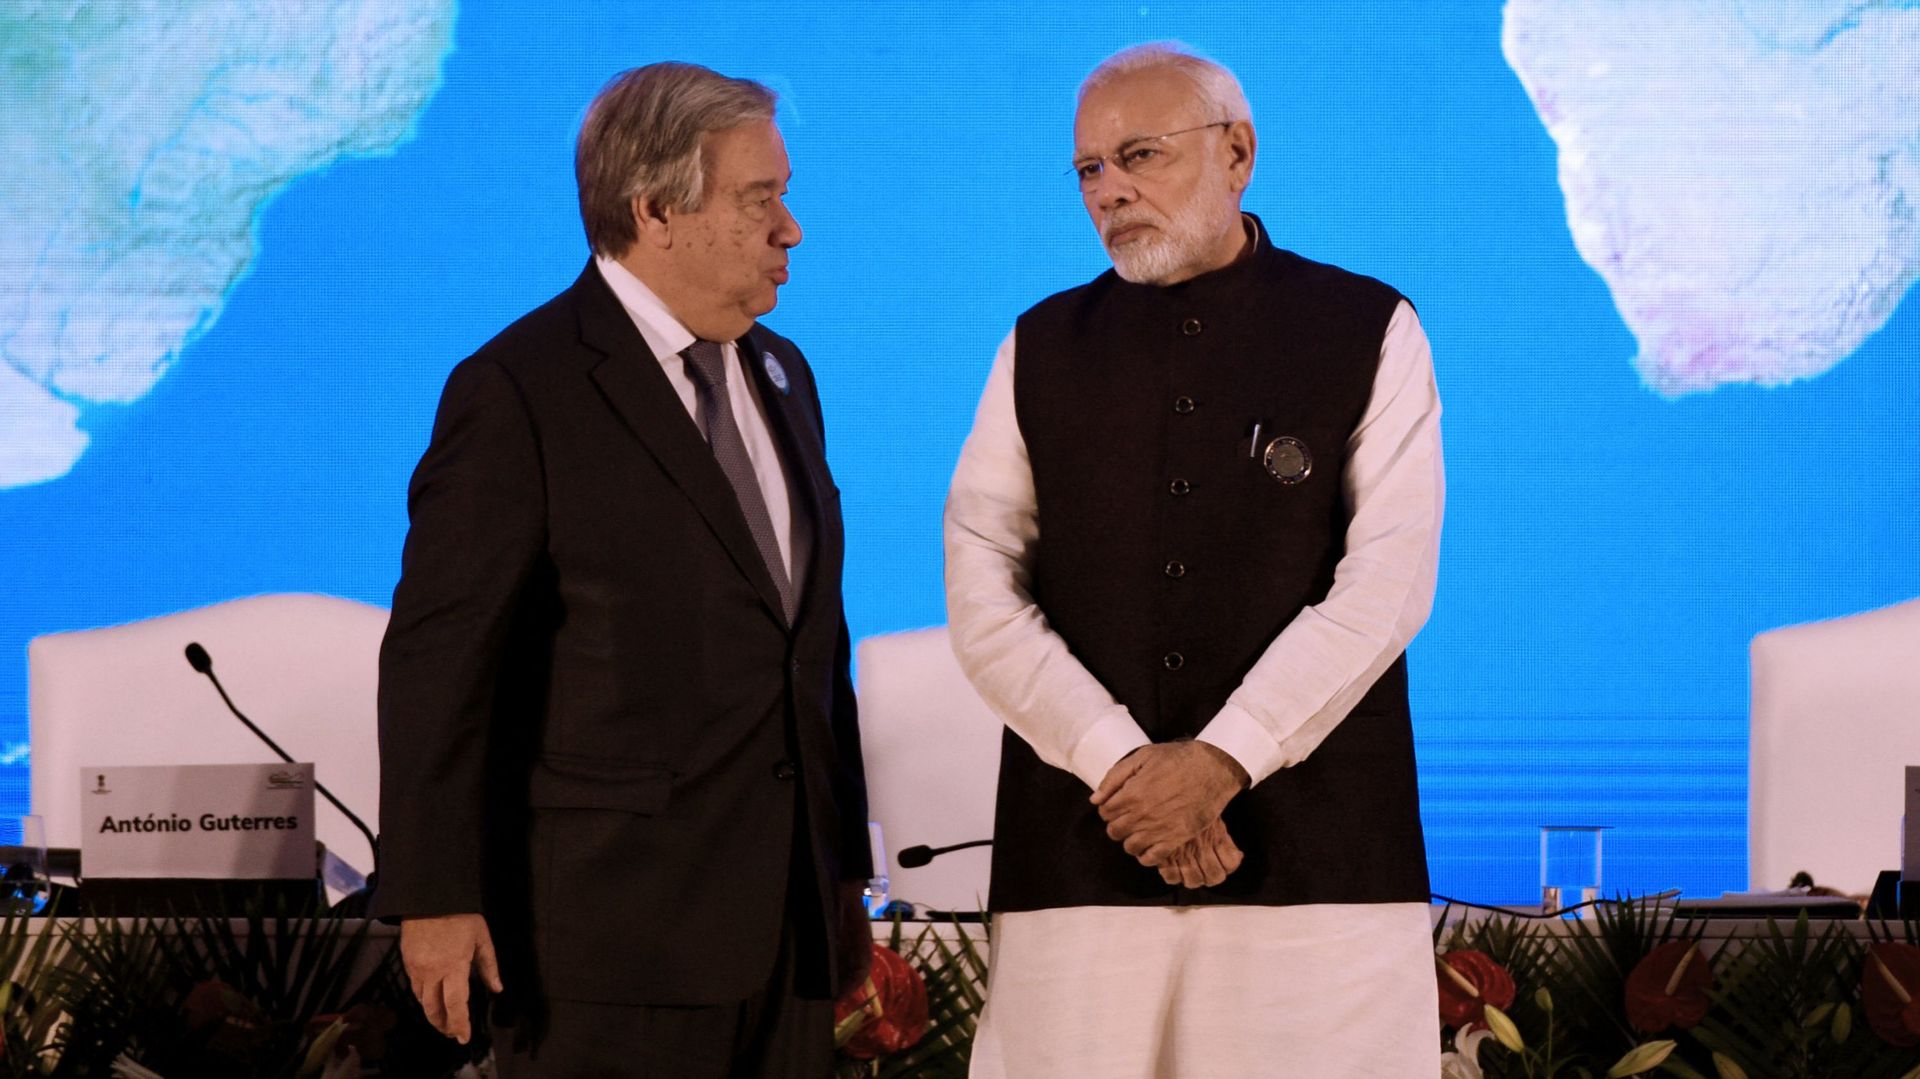 Le secrétaire général de l’ONU Antonio Guterres et le Premier ministre indien Narendra Modi discutent lors de la conclusion de la convention internationale sur l’assainissement Mahatama Gandhi et du lancement de la célébration de la 150e année de naissanc